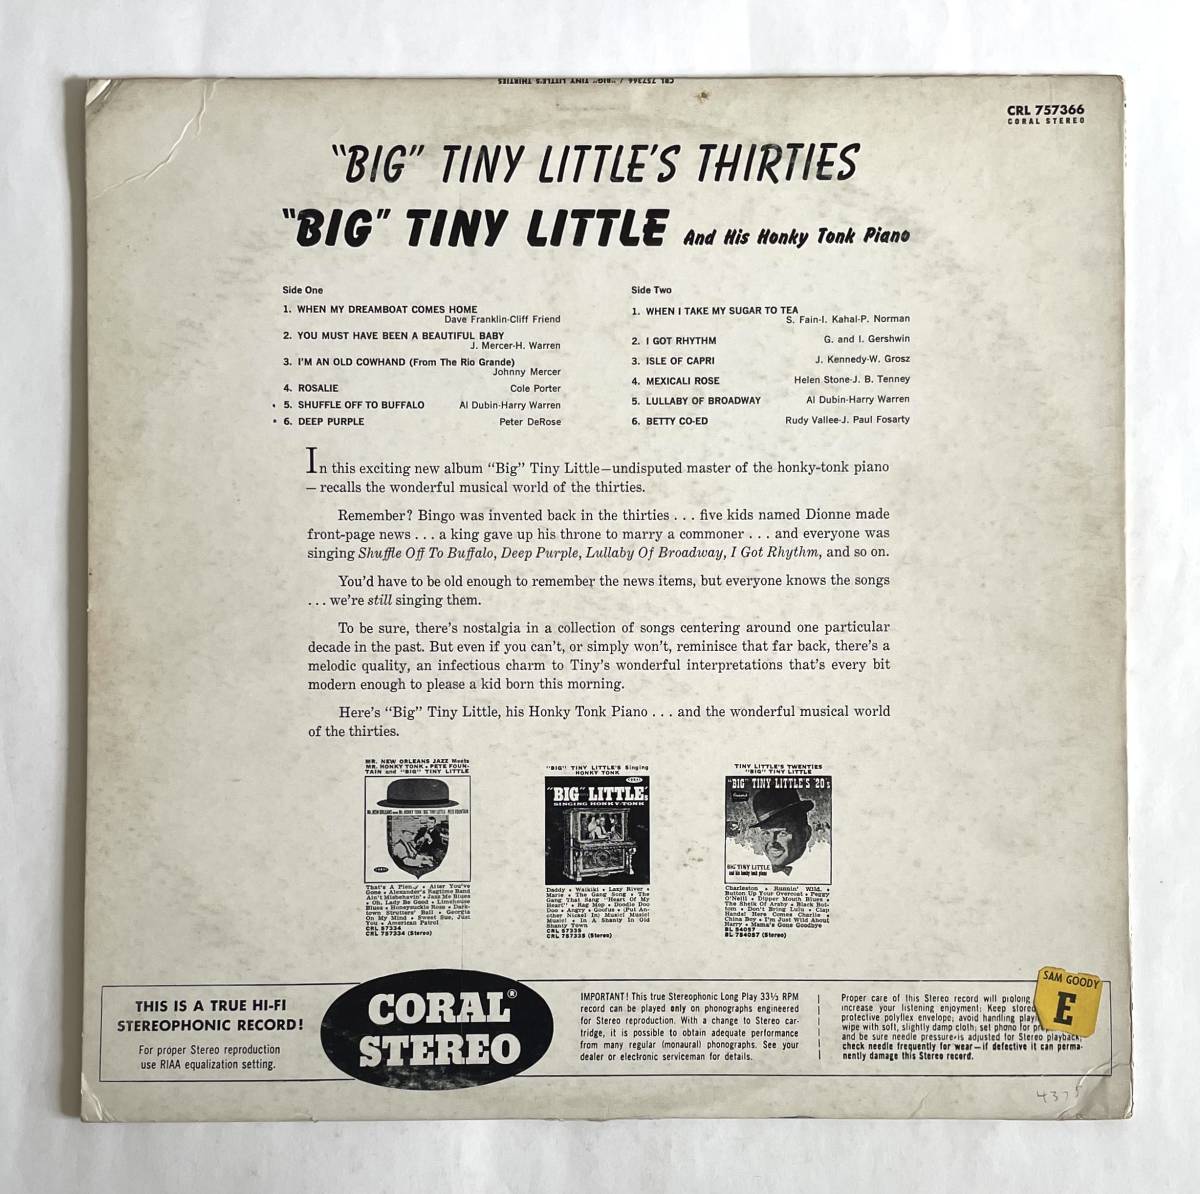 BIG TINY LITTLE'S THIRTIES 米盤オリジナル STEREO CORAL CRL-75366 LPレコード 1961年★US ビッグ・タイニー・リトル ラグタイム・ピアノ_画像2